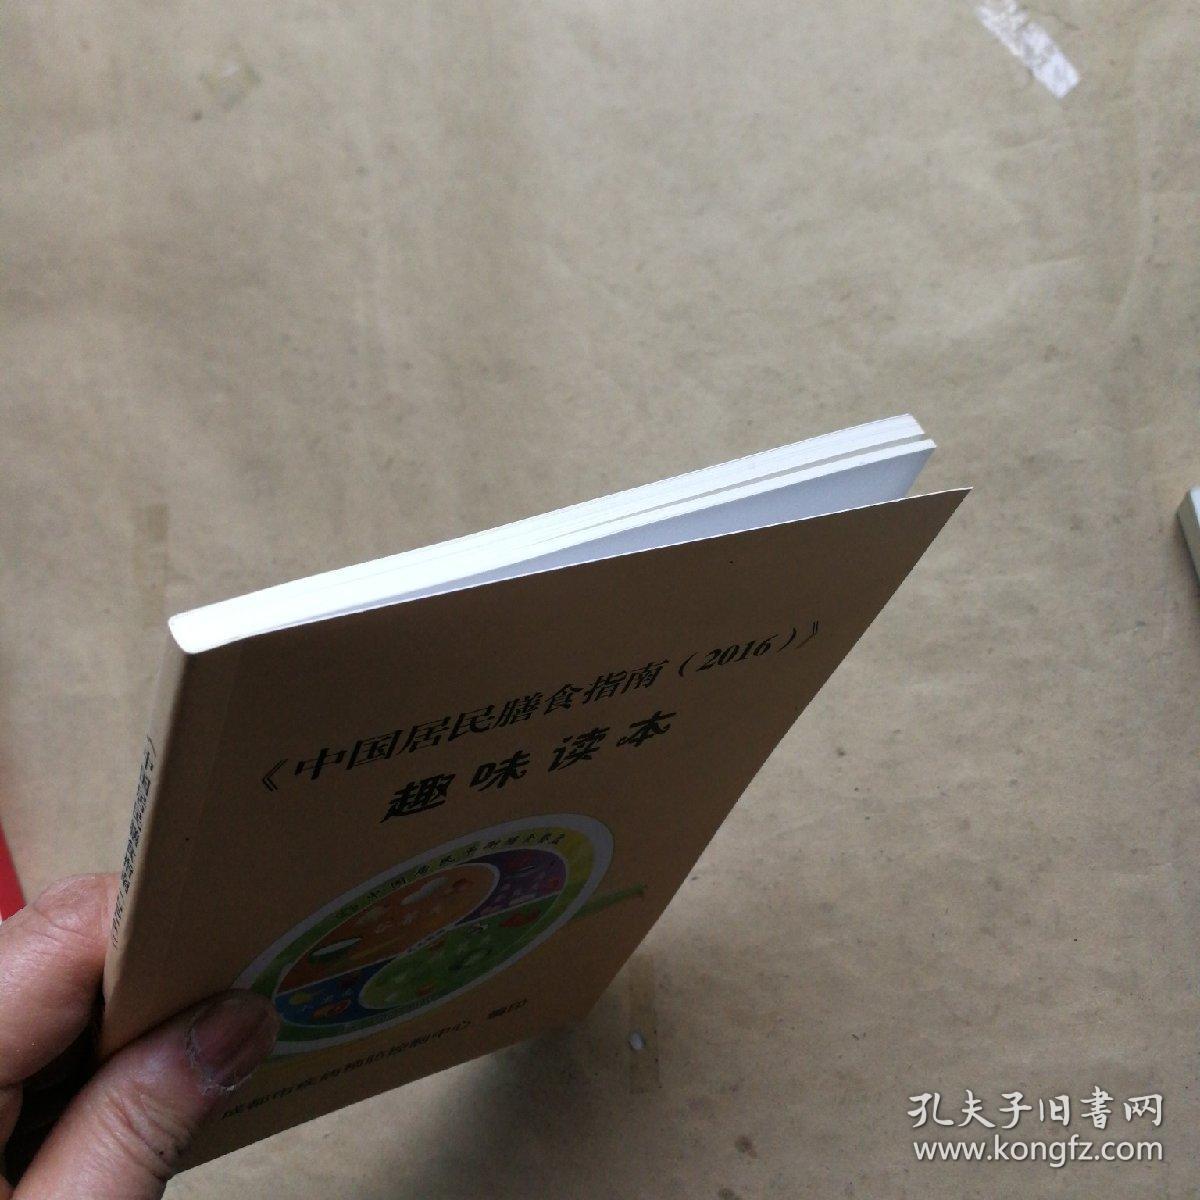 《中国居民膳食指南·（2016）》趣味读本